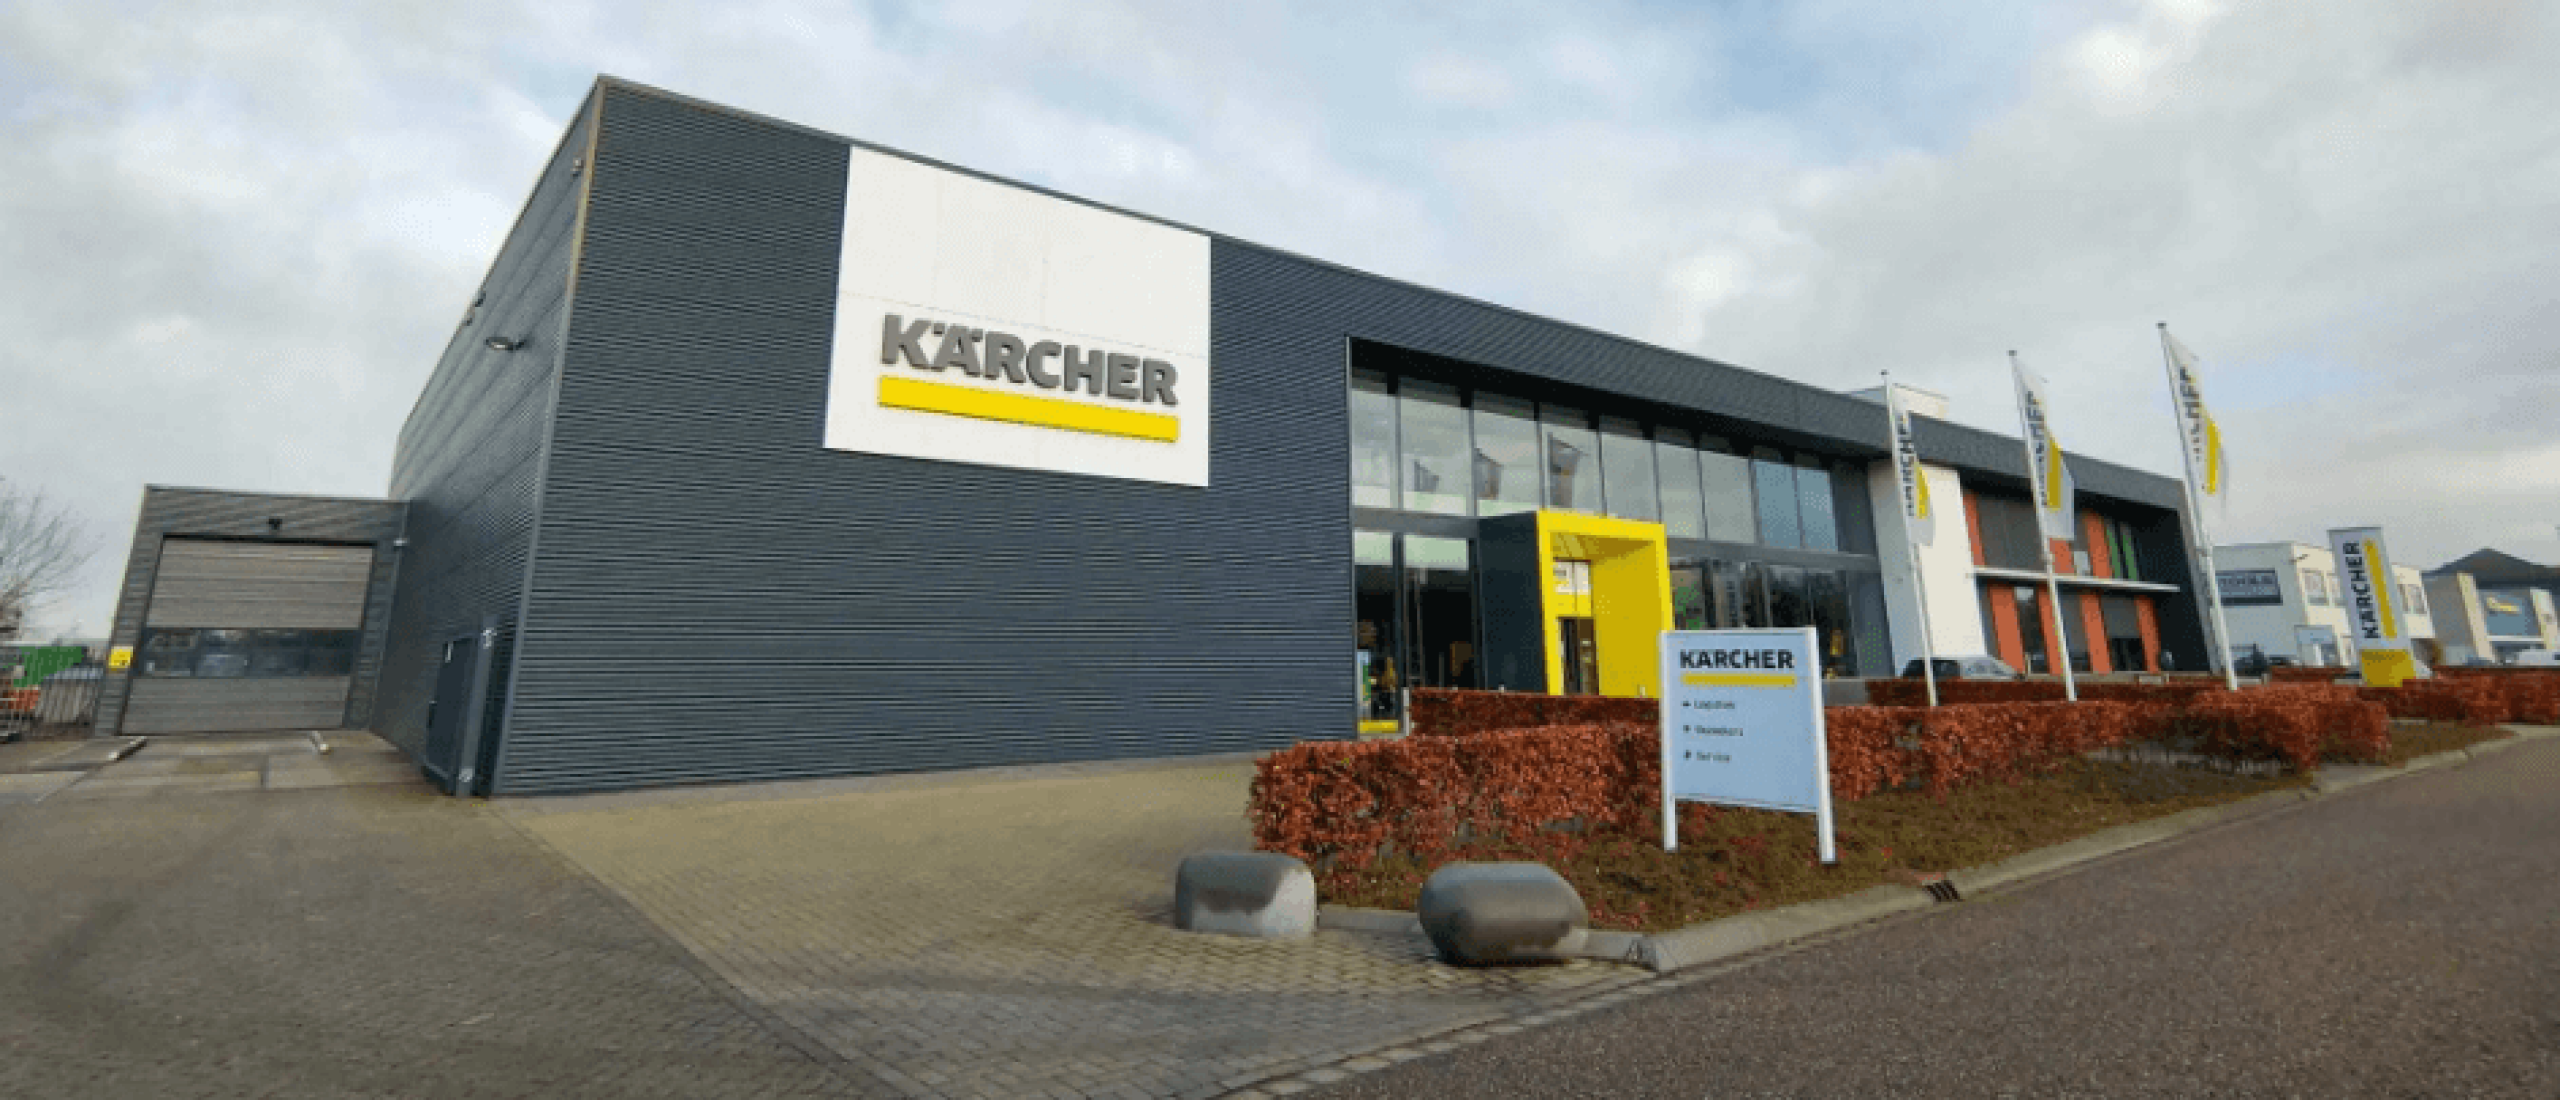 Een nieuw audiosysteem voor het Kärcher center in Made